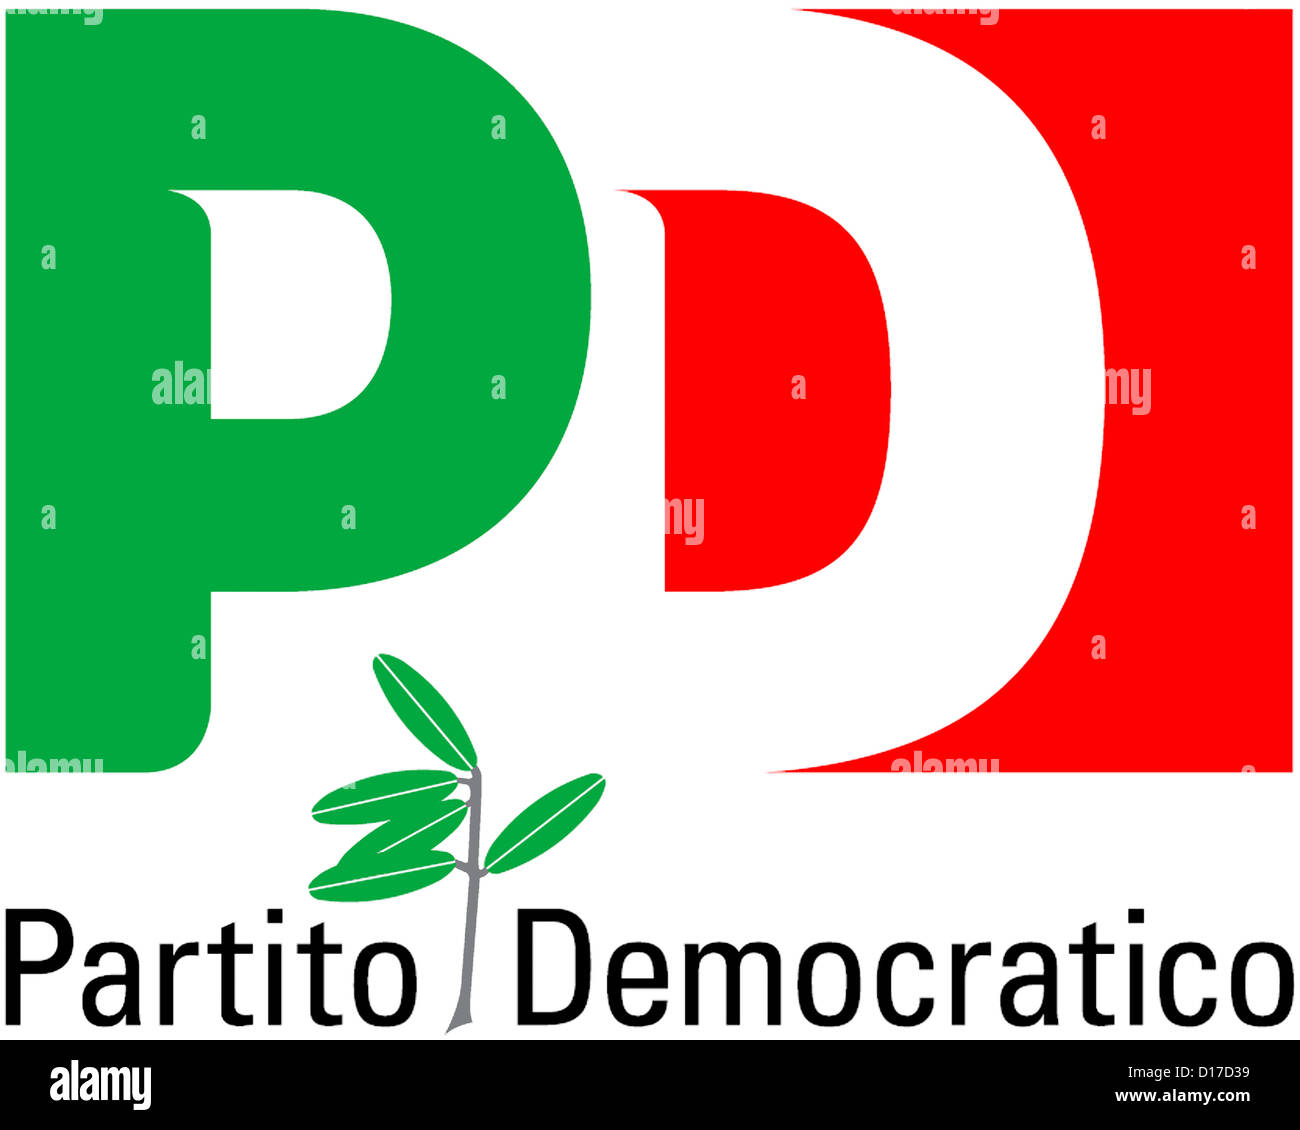 Logo of the Italian party Partito Democratico PD. Stock Photo